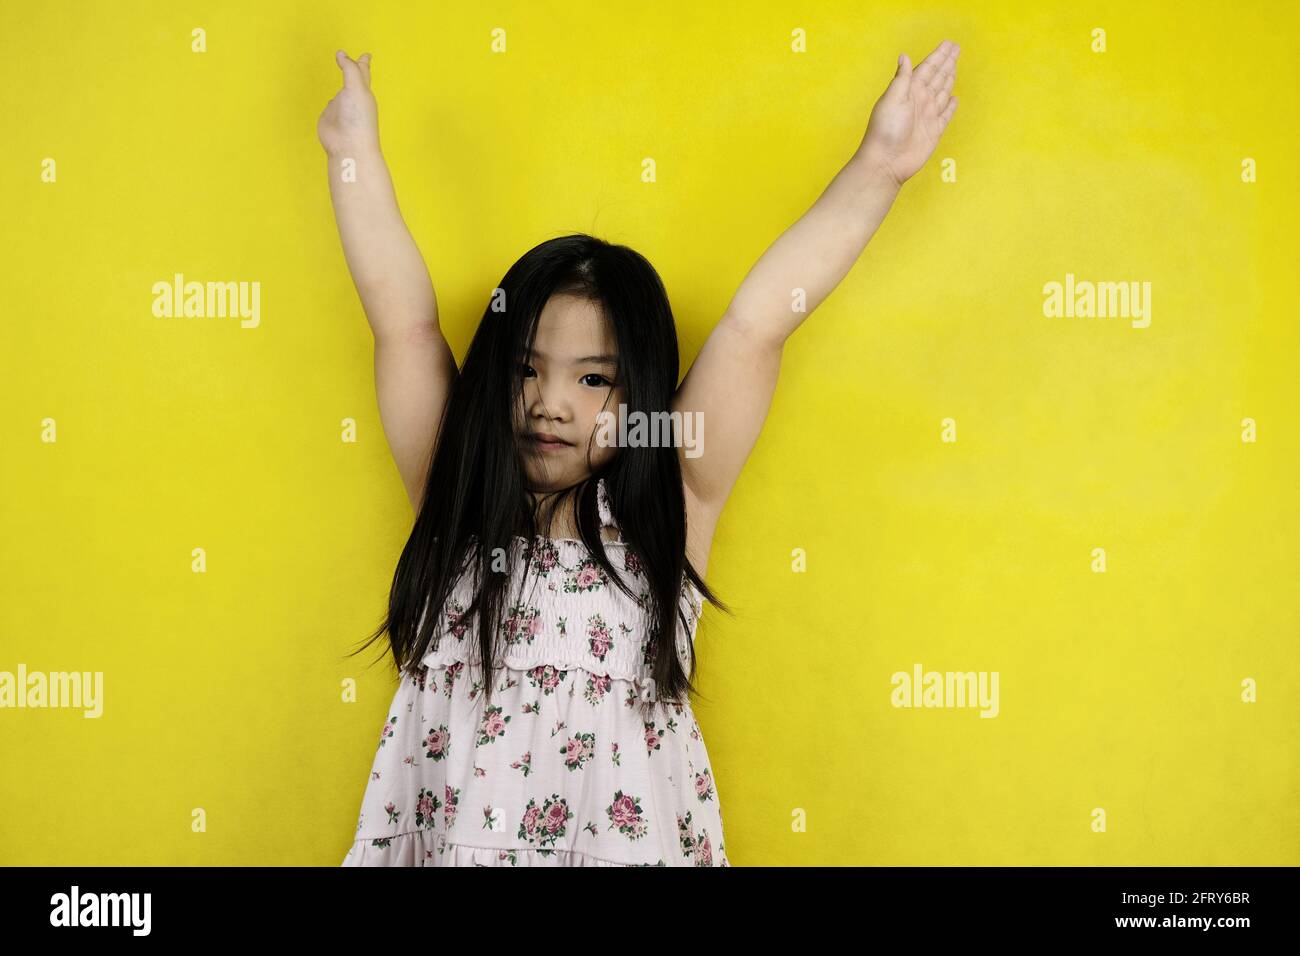 Une jeune fille asiatique mignonne soulève les deux mains, souriant, se sentant heureuse après avoir terminé avec succès son projet de mission. Jaune clair ba Banque D'Images